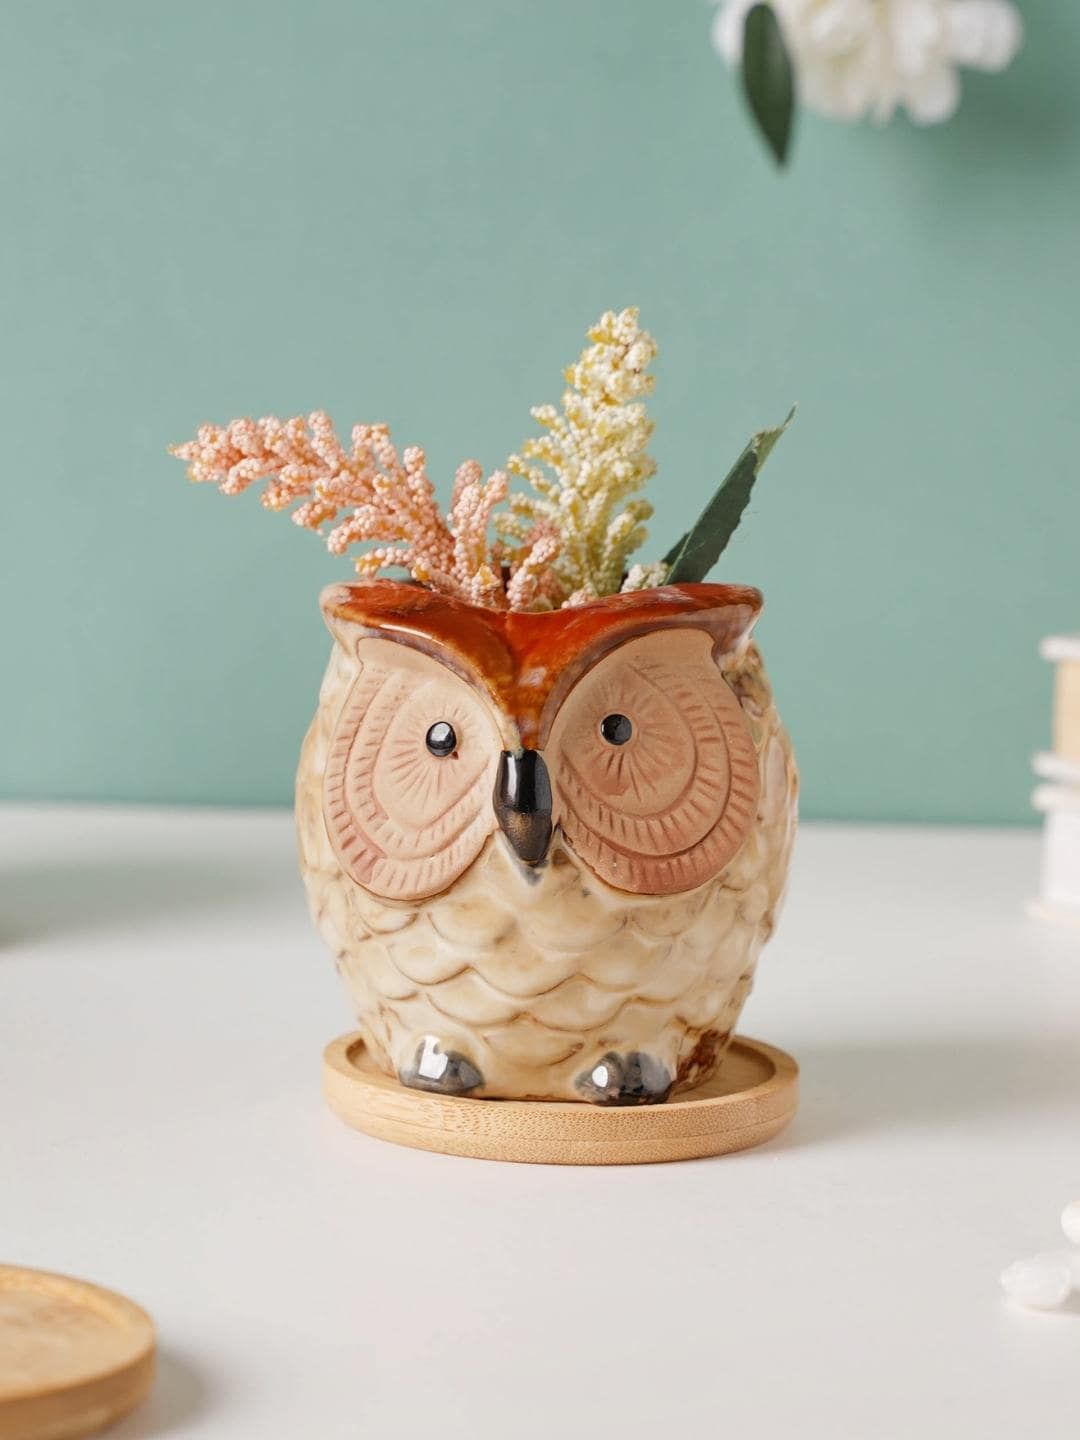 Nestasia Off White Owl Ceramic Planter With Wooden Coaster Price in India